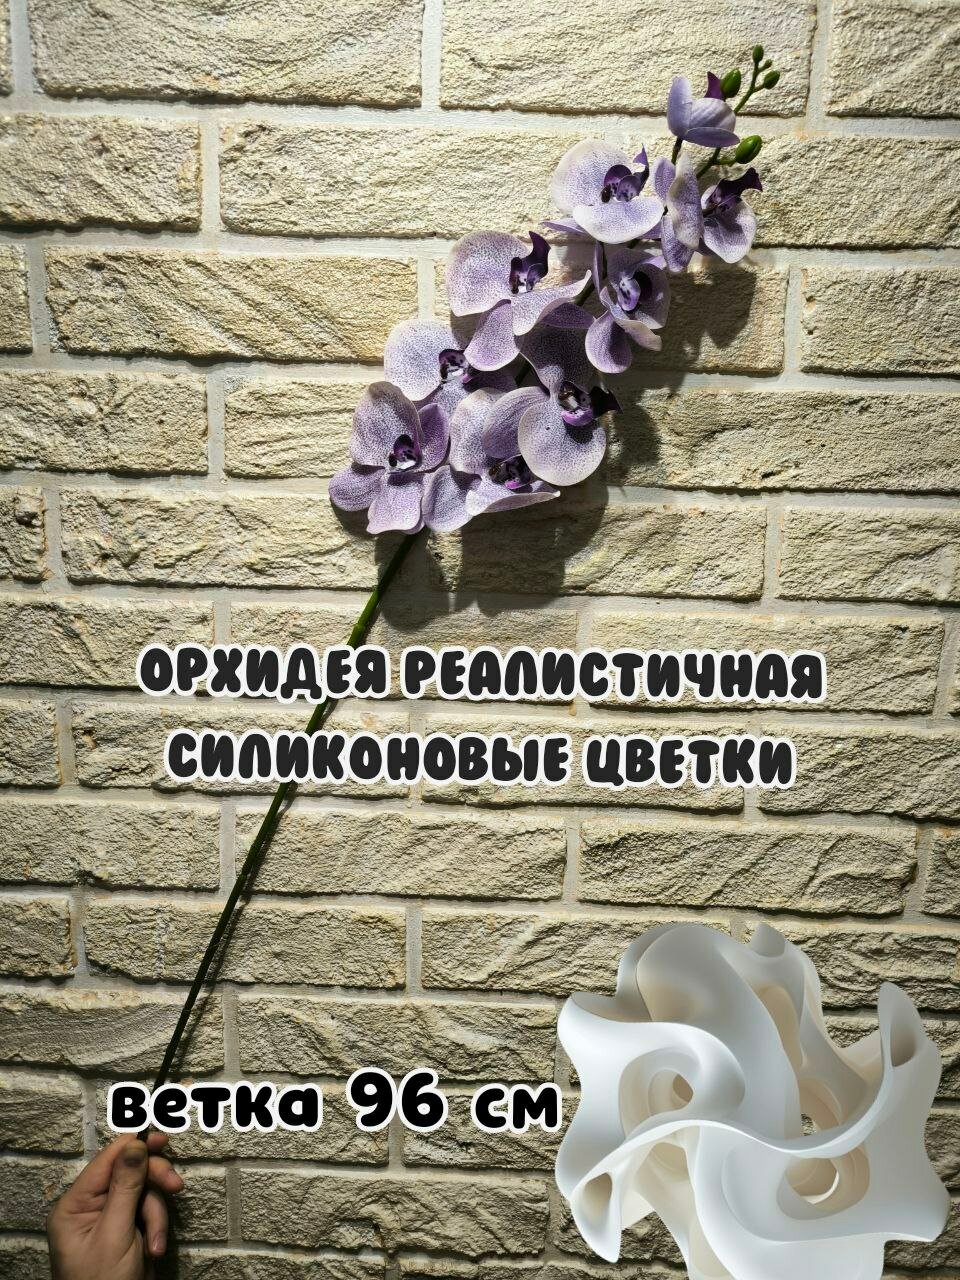 Орхидея реалистичная искусственная, 96 см, фиолетовая мелкая крапинка